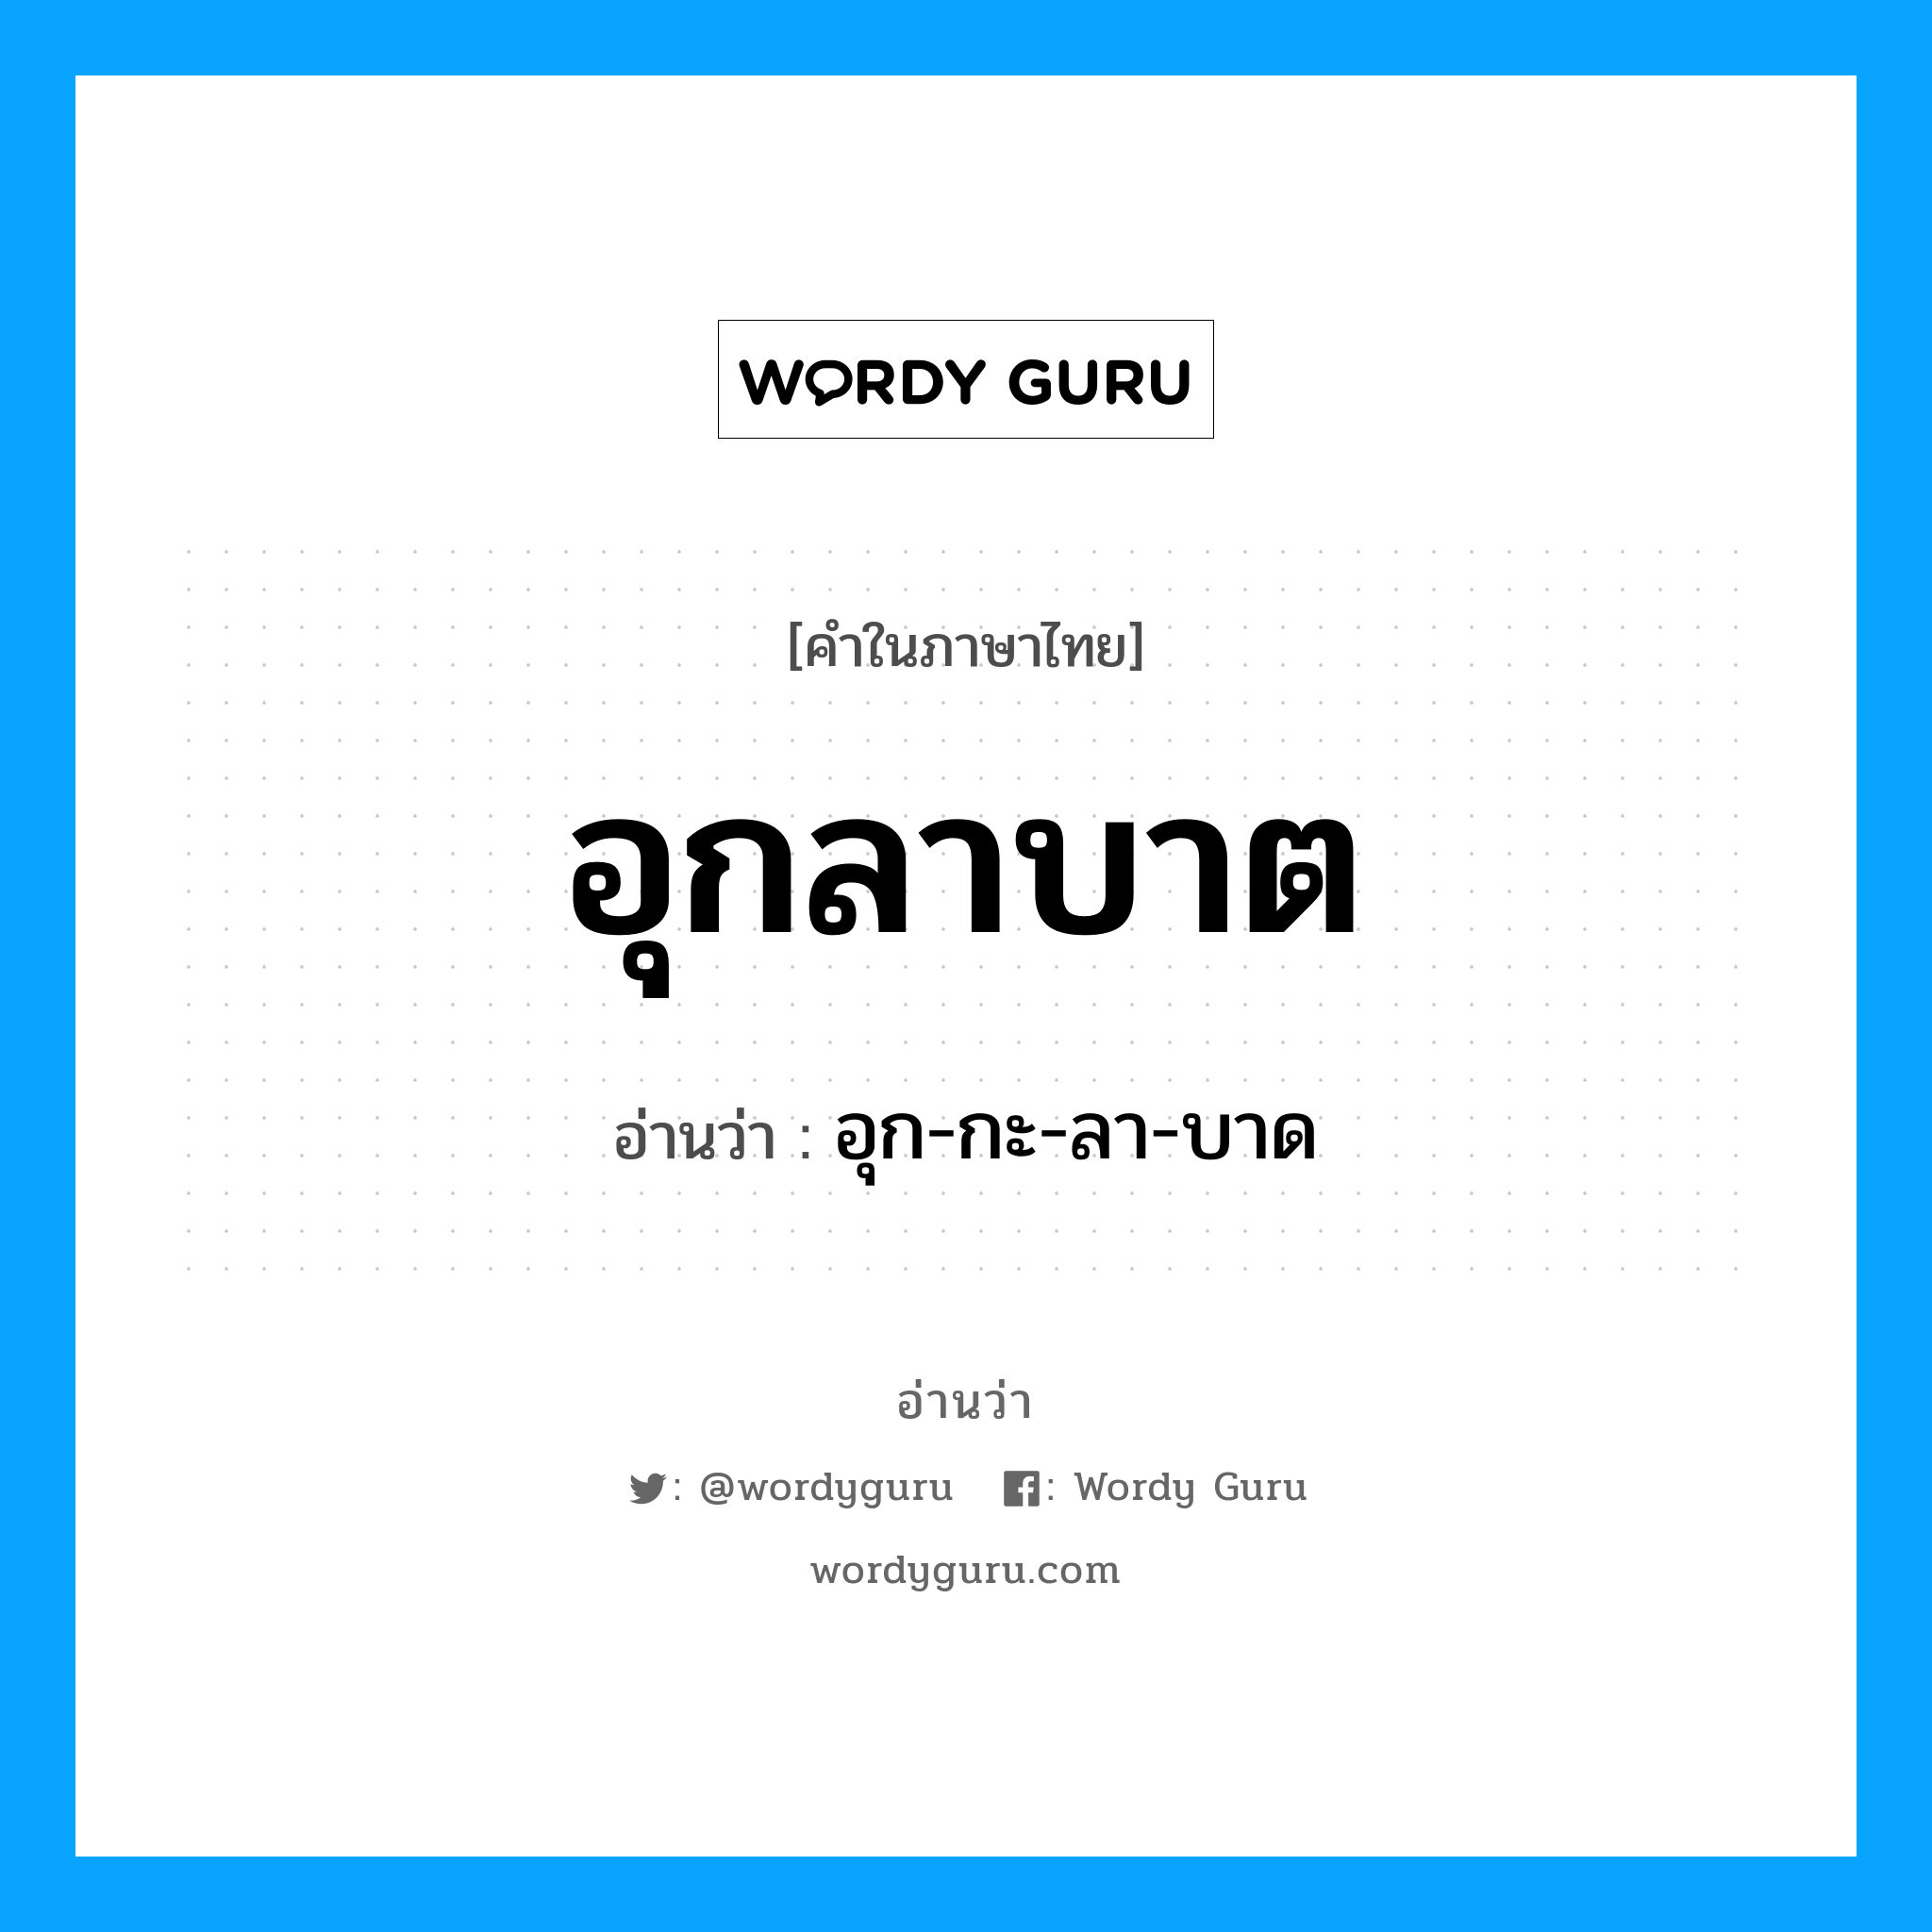 อุก-กะ-ลา-บาด เป็นคำอ่านของคำไหน?, คำในภาษาไทย อุก-กะ-ลา-บาด อ่านว่า อุกลาบาต